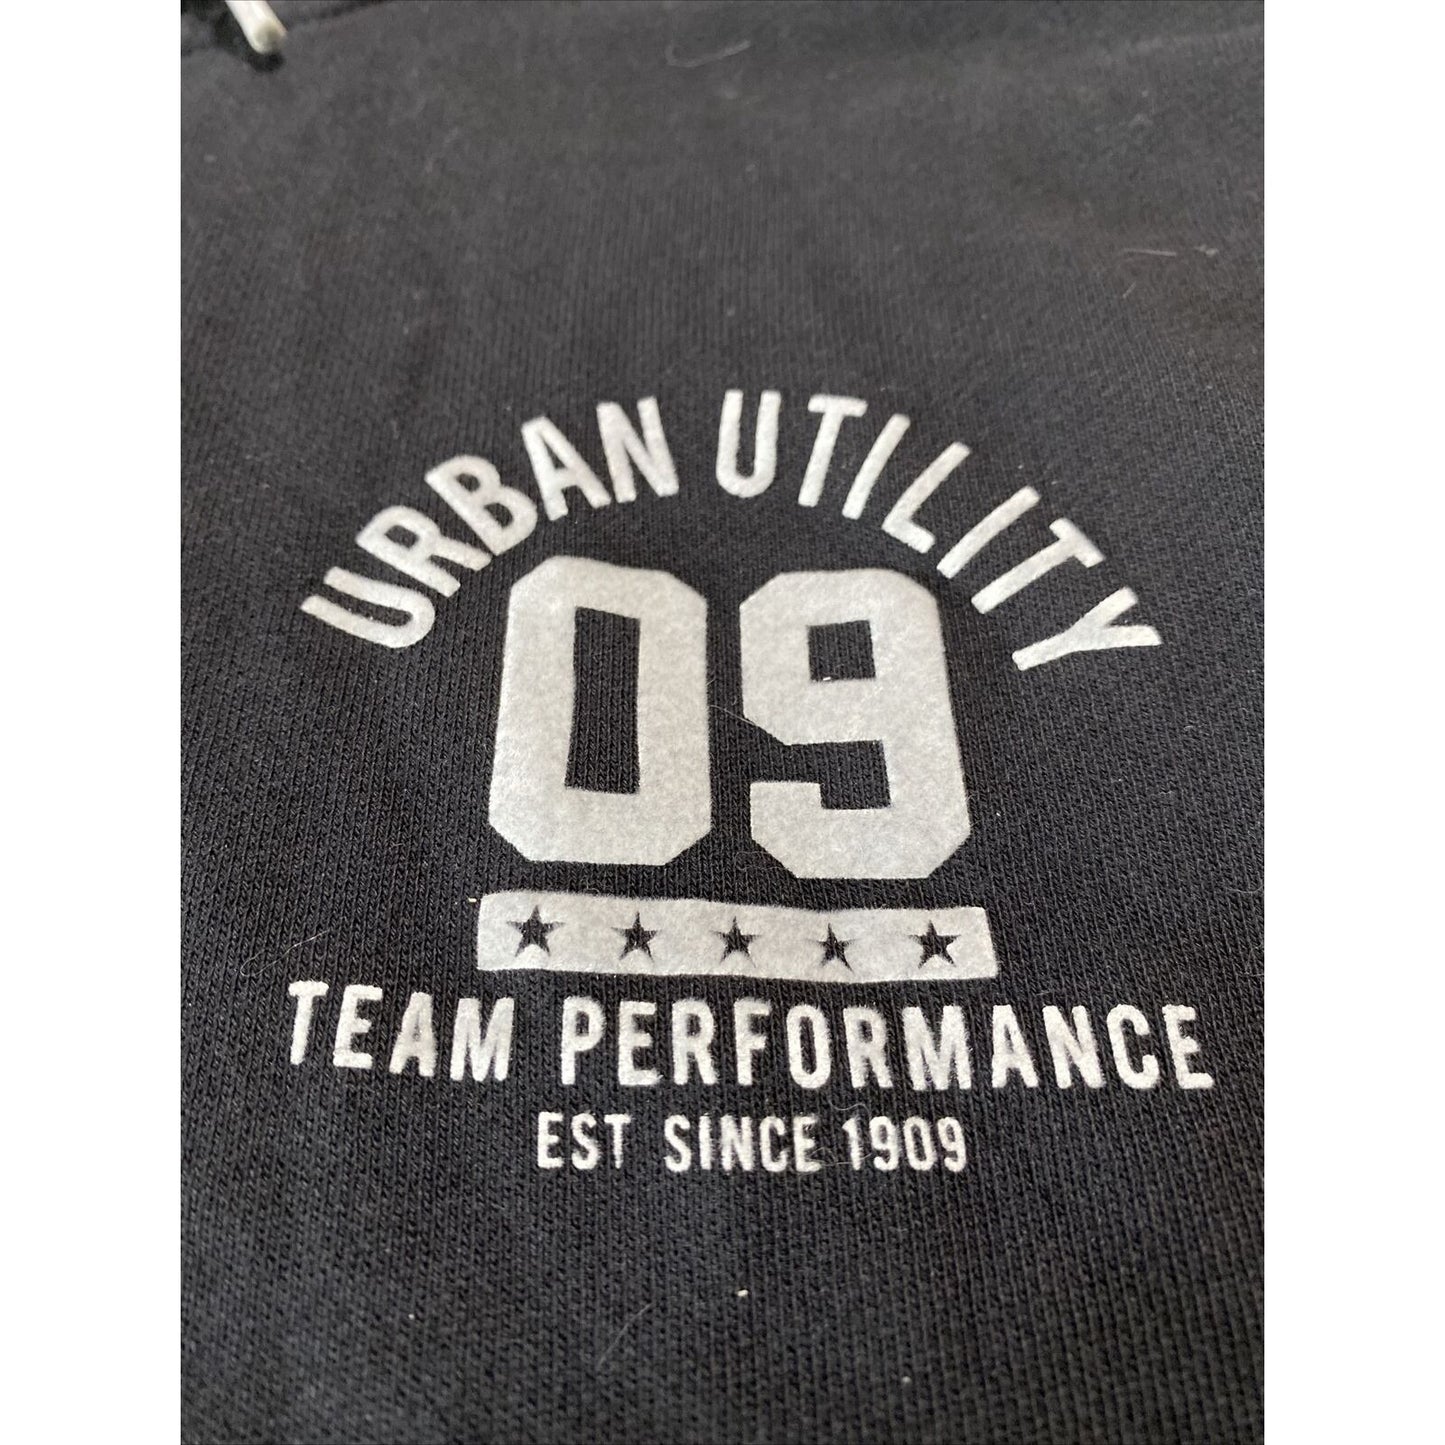 Bossini Urban Utility Team Performance 09 Mens XL Black Cotton Sweatshirt Hoodie